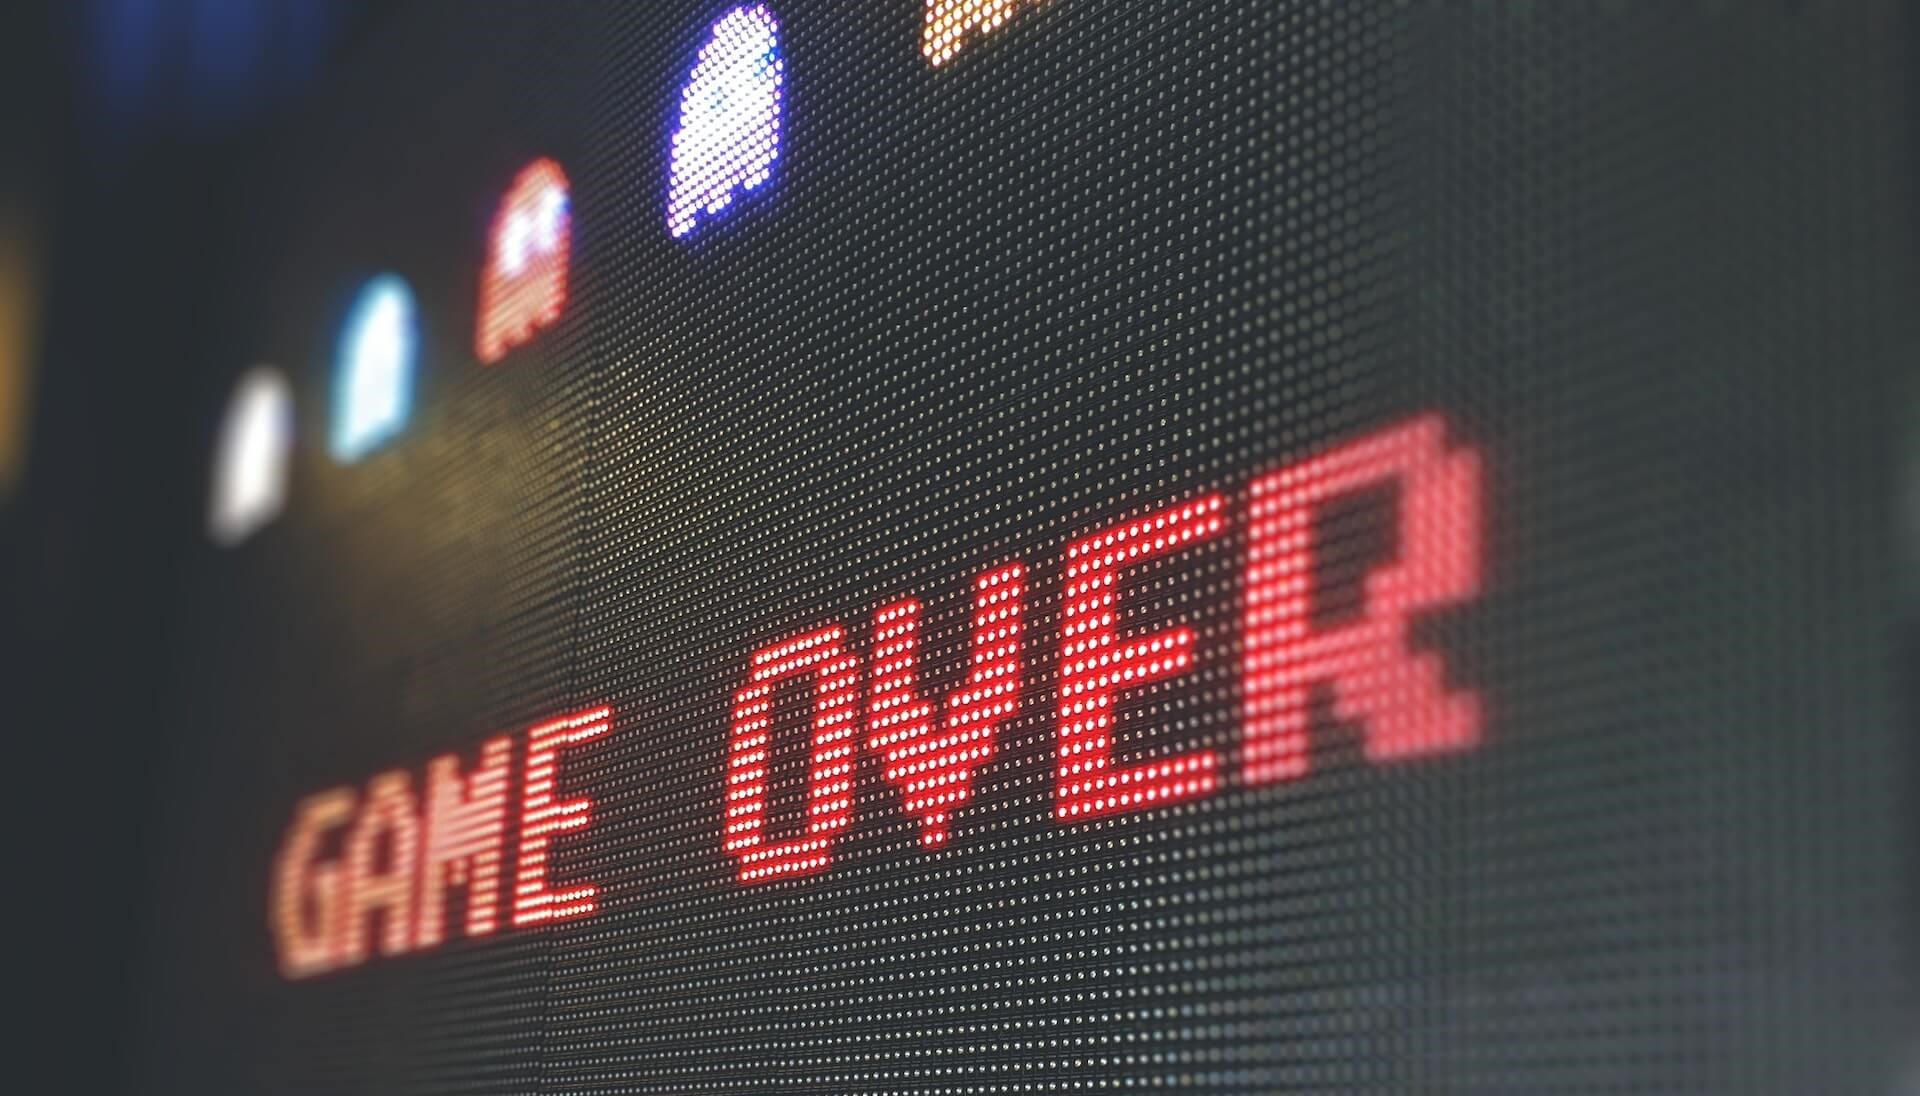 Game Over"-Bildschirm des Spiels Pac-Man mit Highscore und blinkenden Geistern